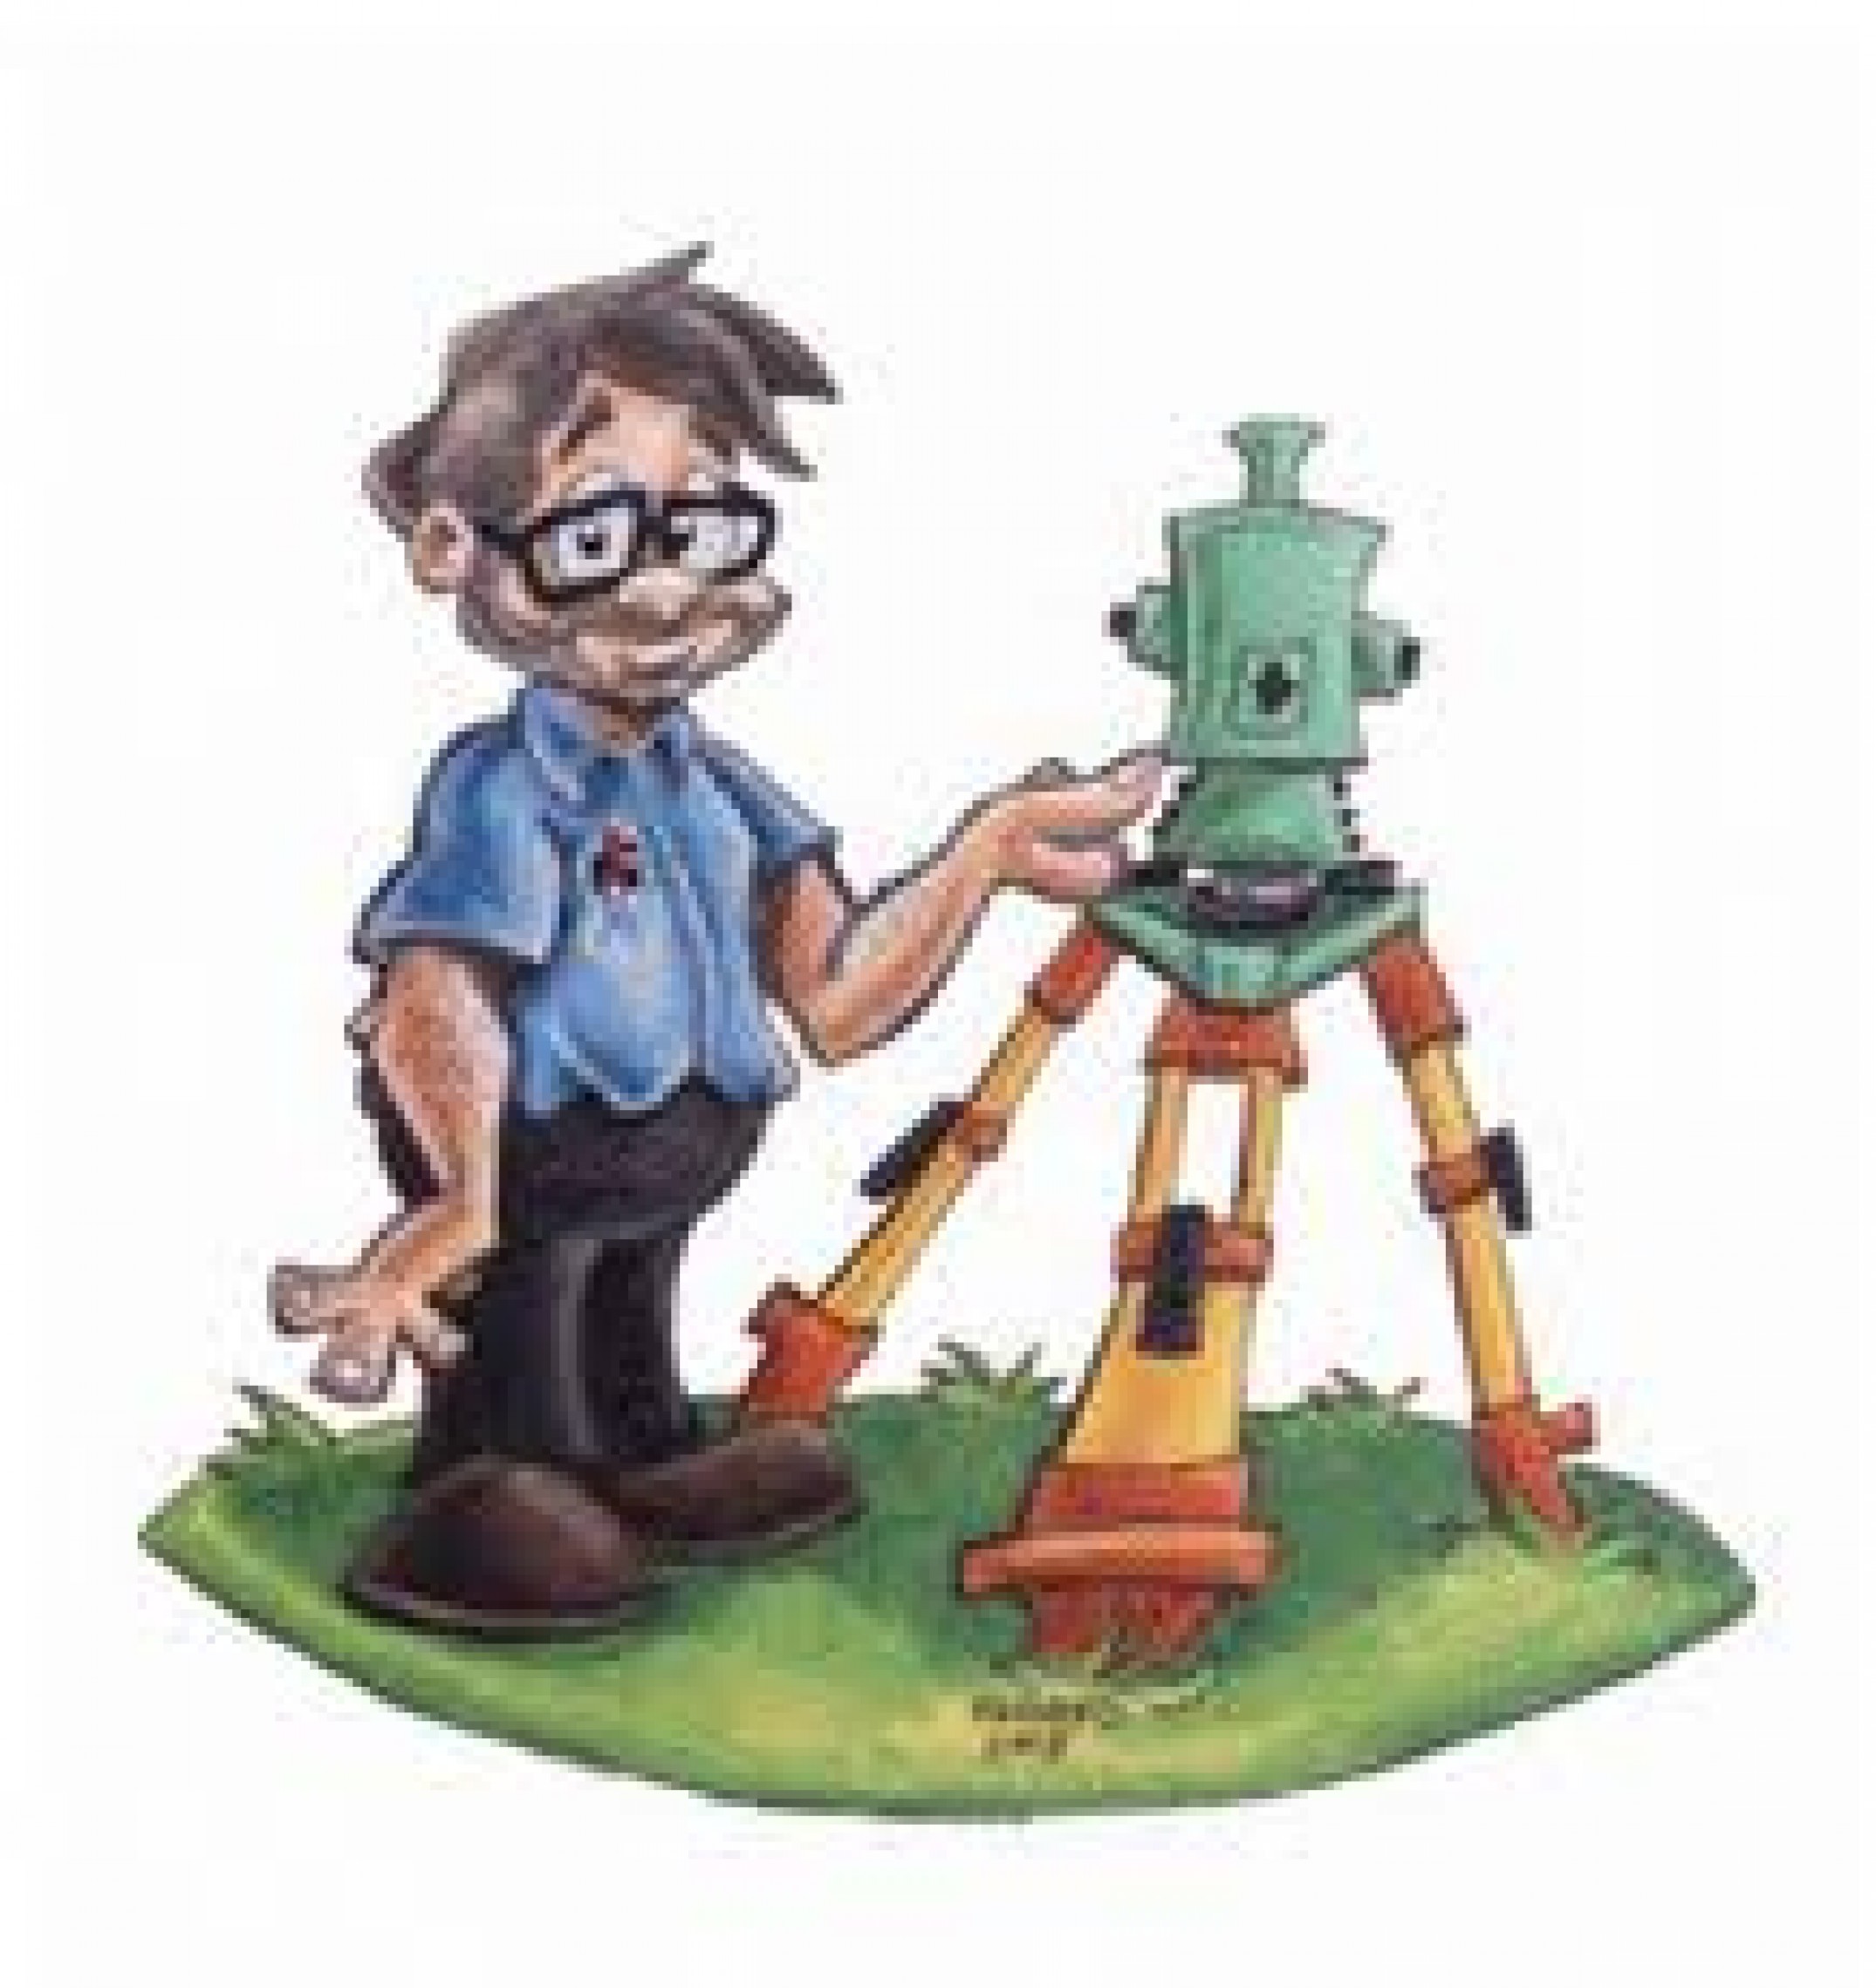 A nerdy boy holds a weird looking machine